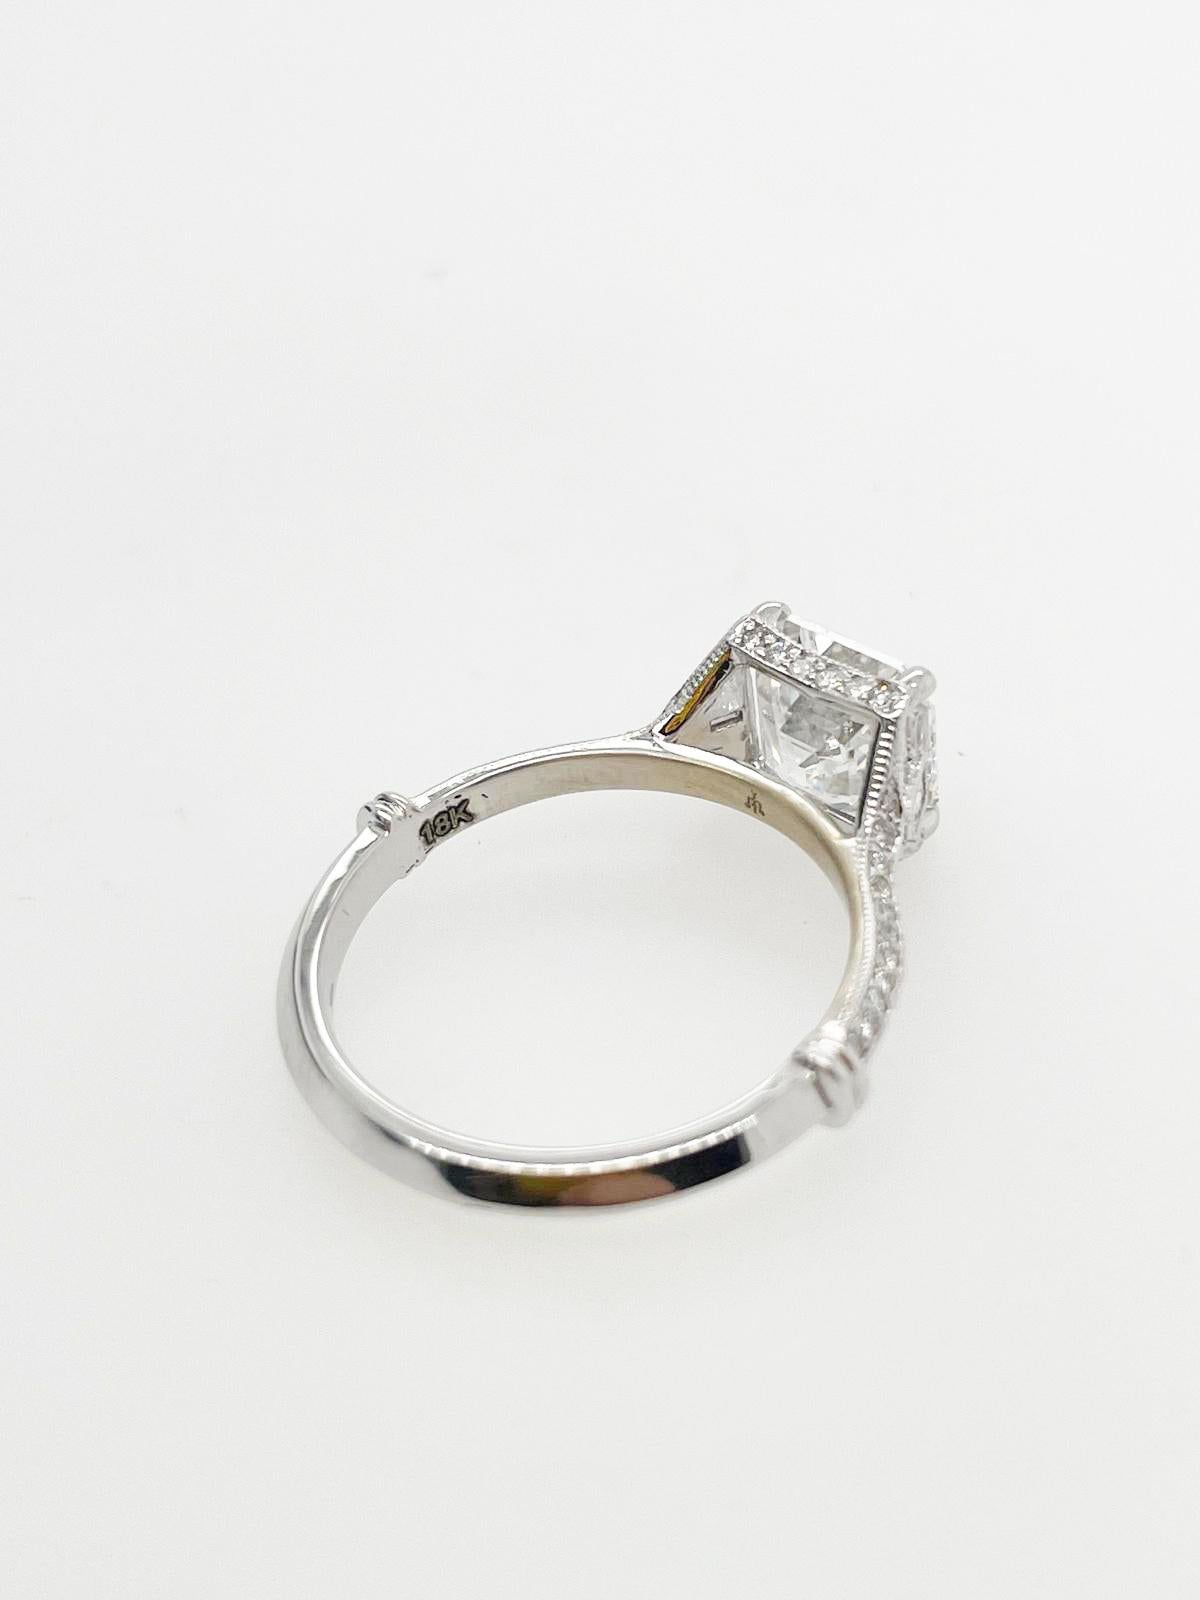 For Sale:  2ct Art Deco asscher cut diamond ring 3